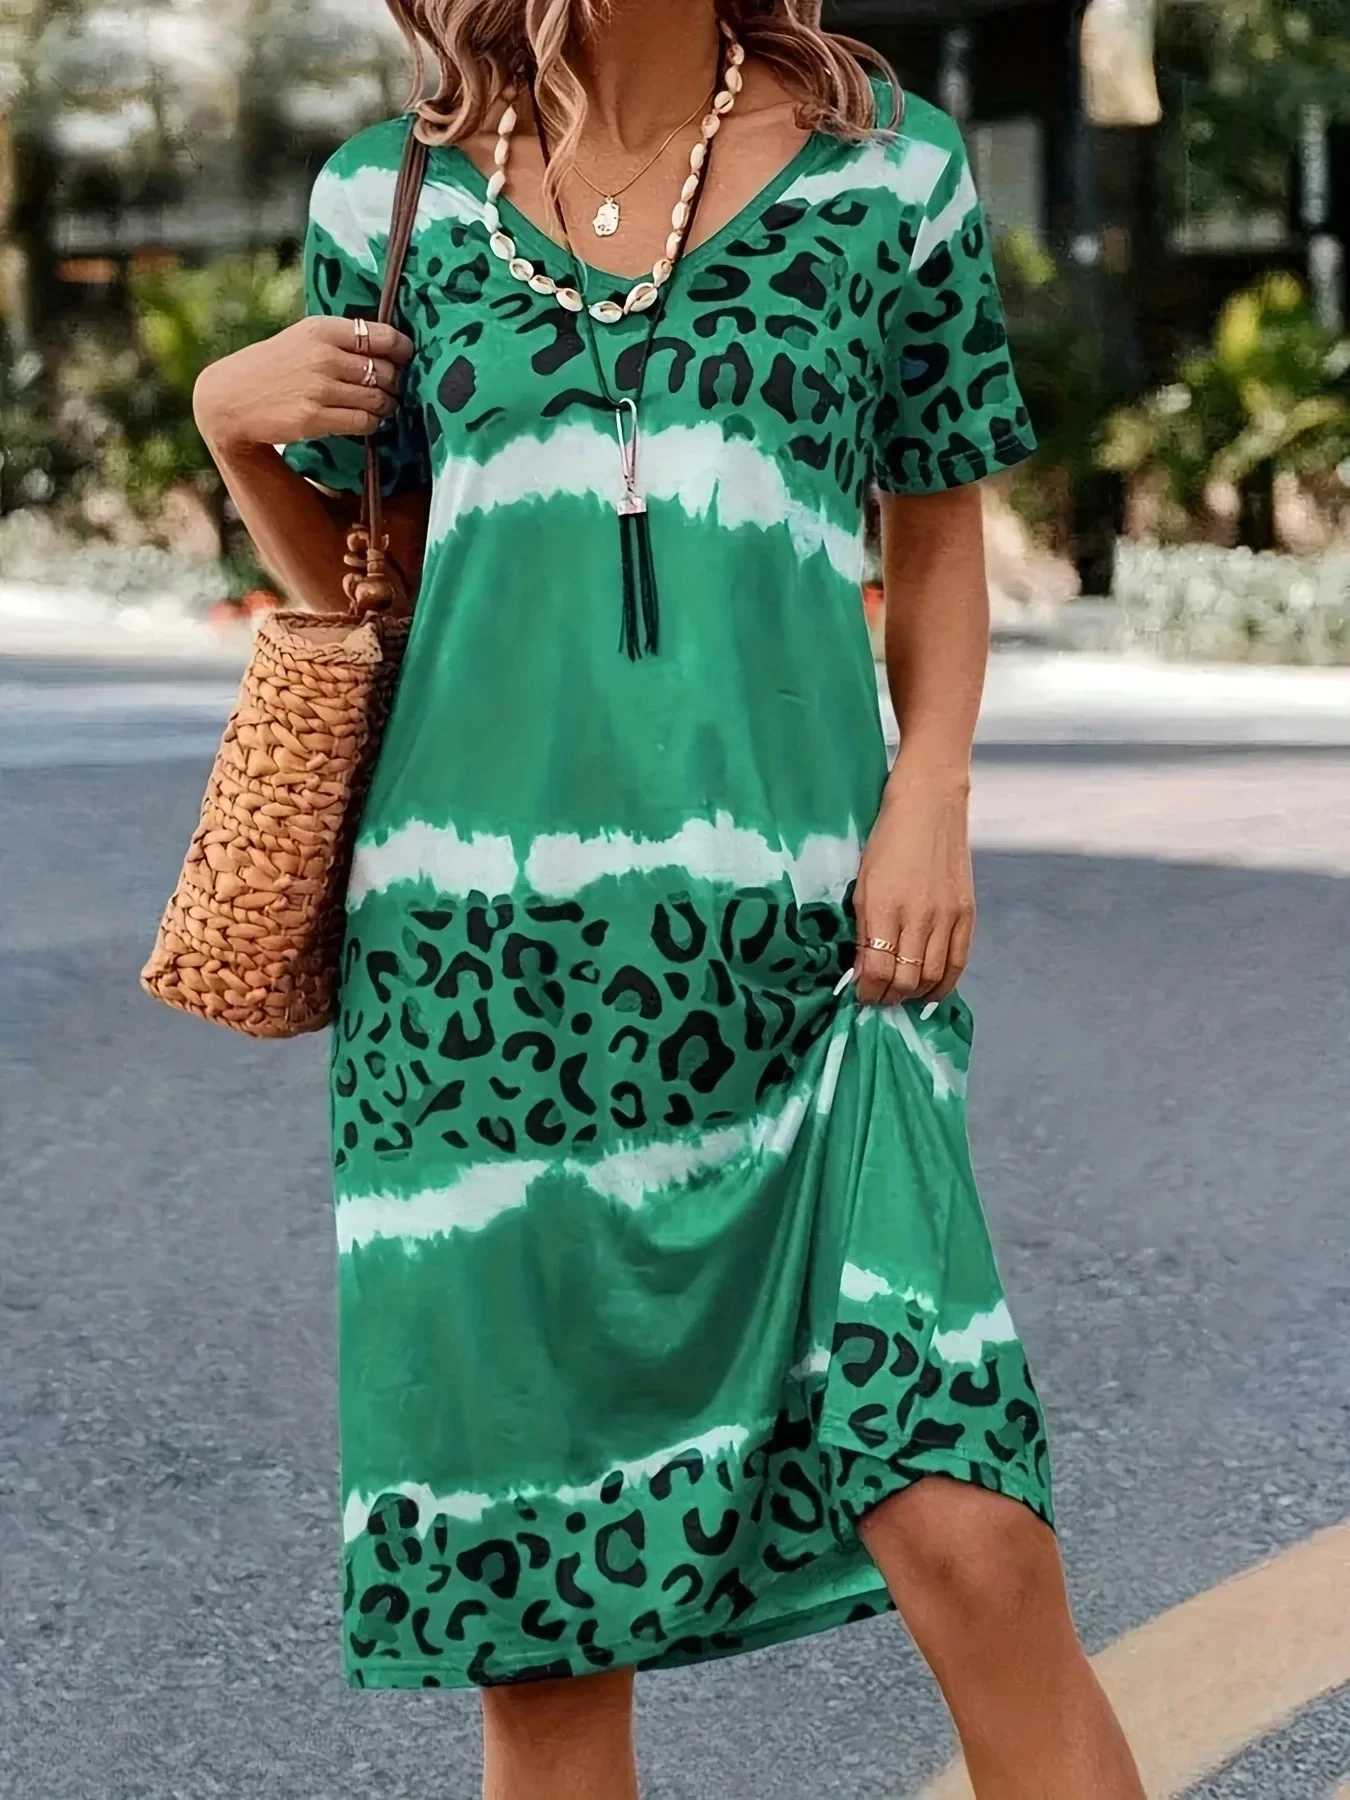 فساتين غير رسمية أساسية بالإضافة إلى حجم نساء اللباس غير الرسمي صبغة نمر قصير سرقلة طفيفة فستان تمتد فستان الصيف السيدات الأزياء